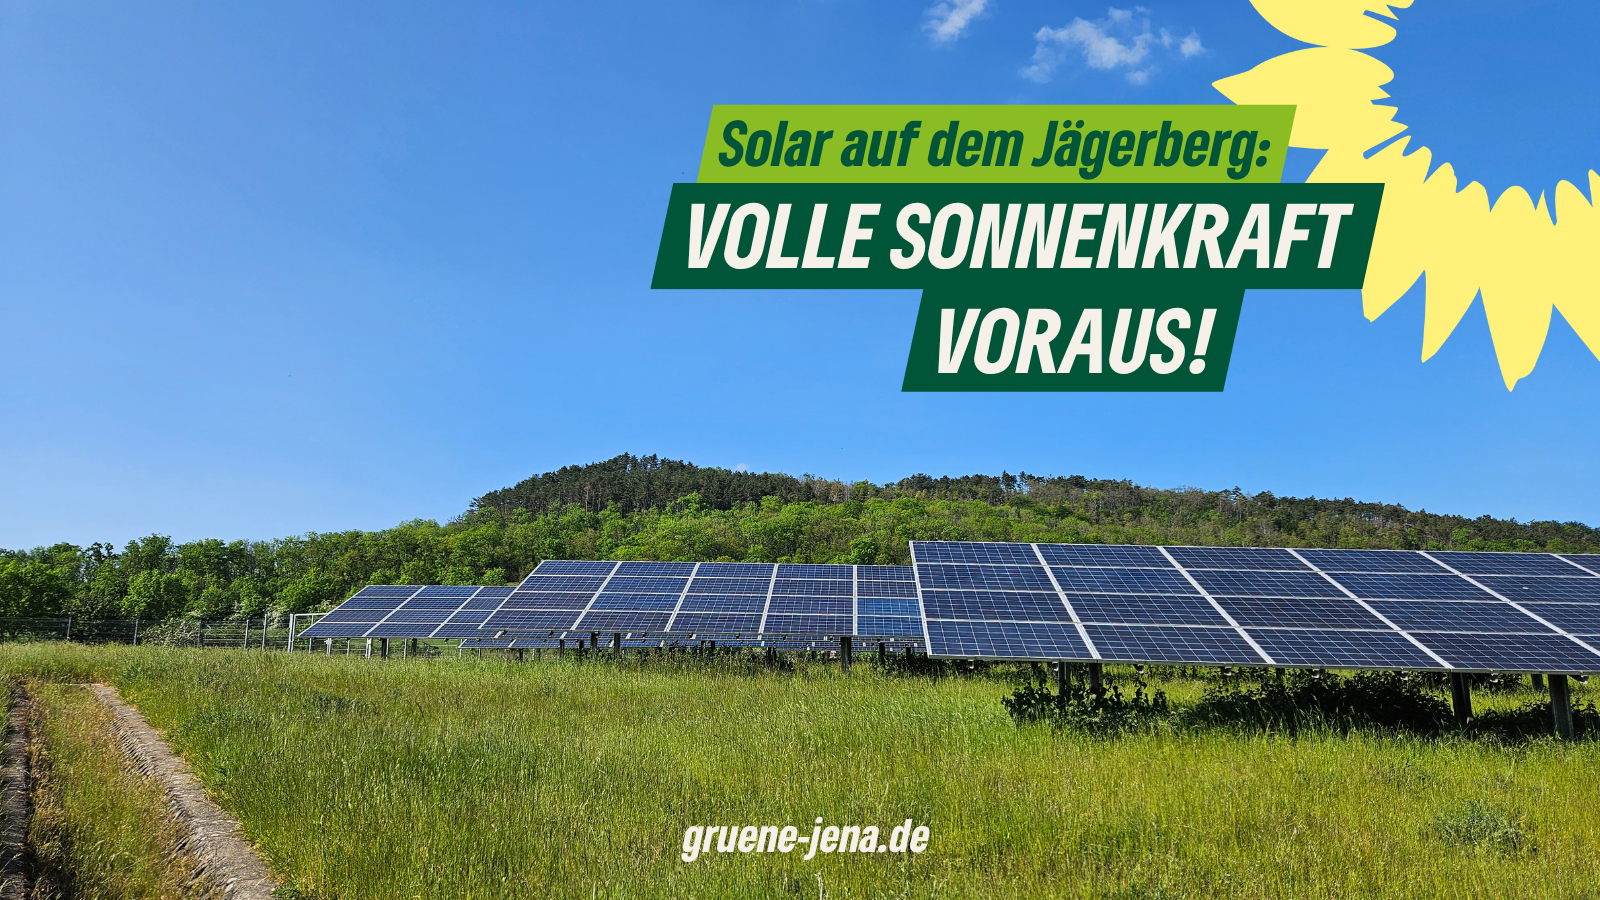 Hintergrund: Solarpark Ilmnitz. Text: Solar auf dem Jägerberg: Volle Sonnenkraft voraus!